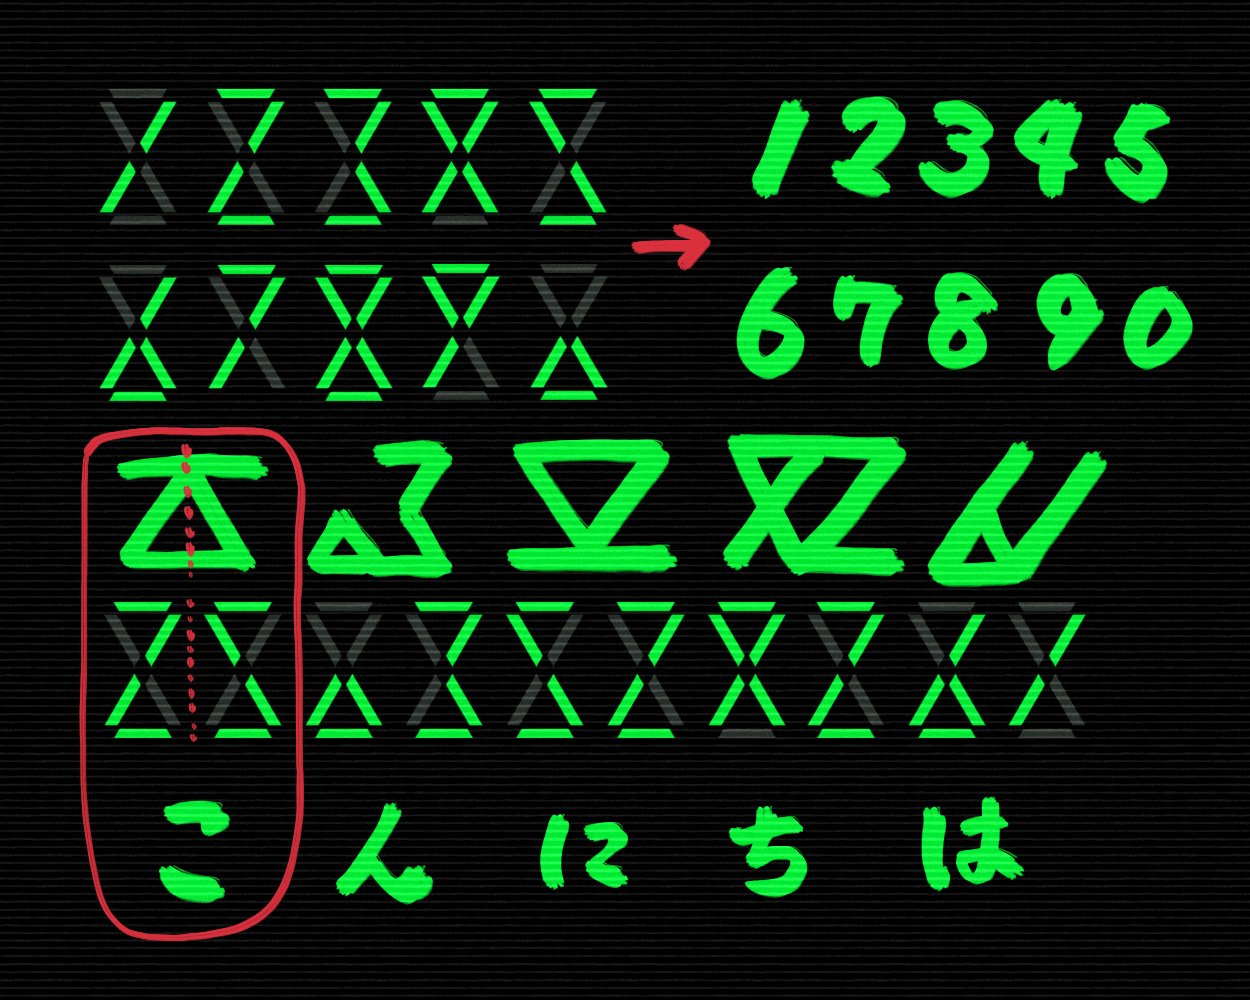 キタ 解読の方法 不思議な文字は三角で作ったデジタル数字を２つ並べたものです その数字２つで文字を表現しています 既にあったらごめんなさい T Co Dnv6knwfhd Twitter